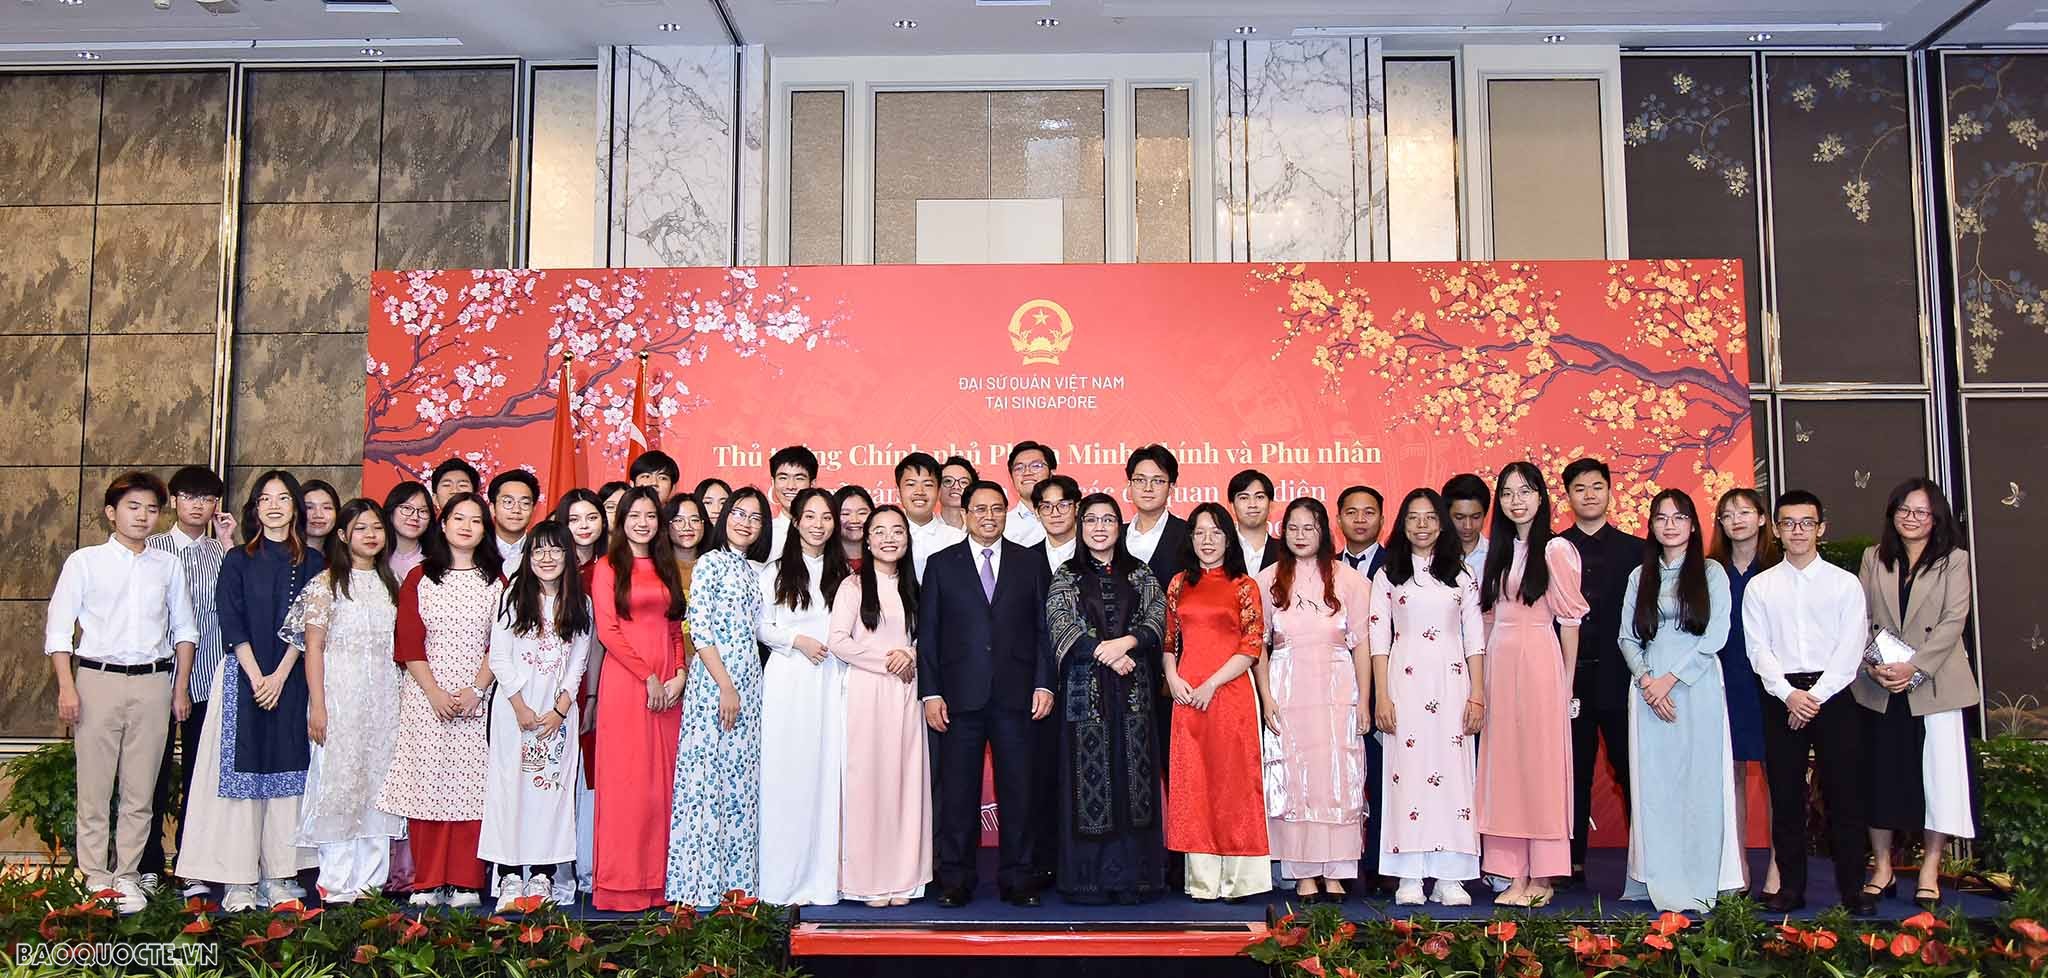 Thủ tướng Chính phủ: Mong kiều bào luôn giữ hình ảnh người Việt Nam thân thiện, hiếu khách, cầu thị